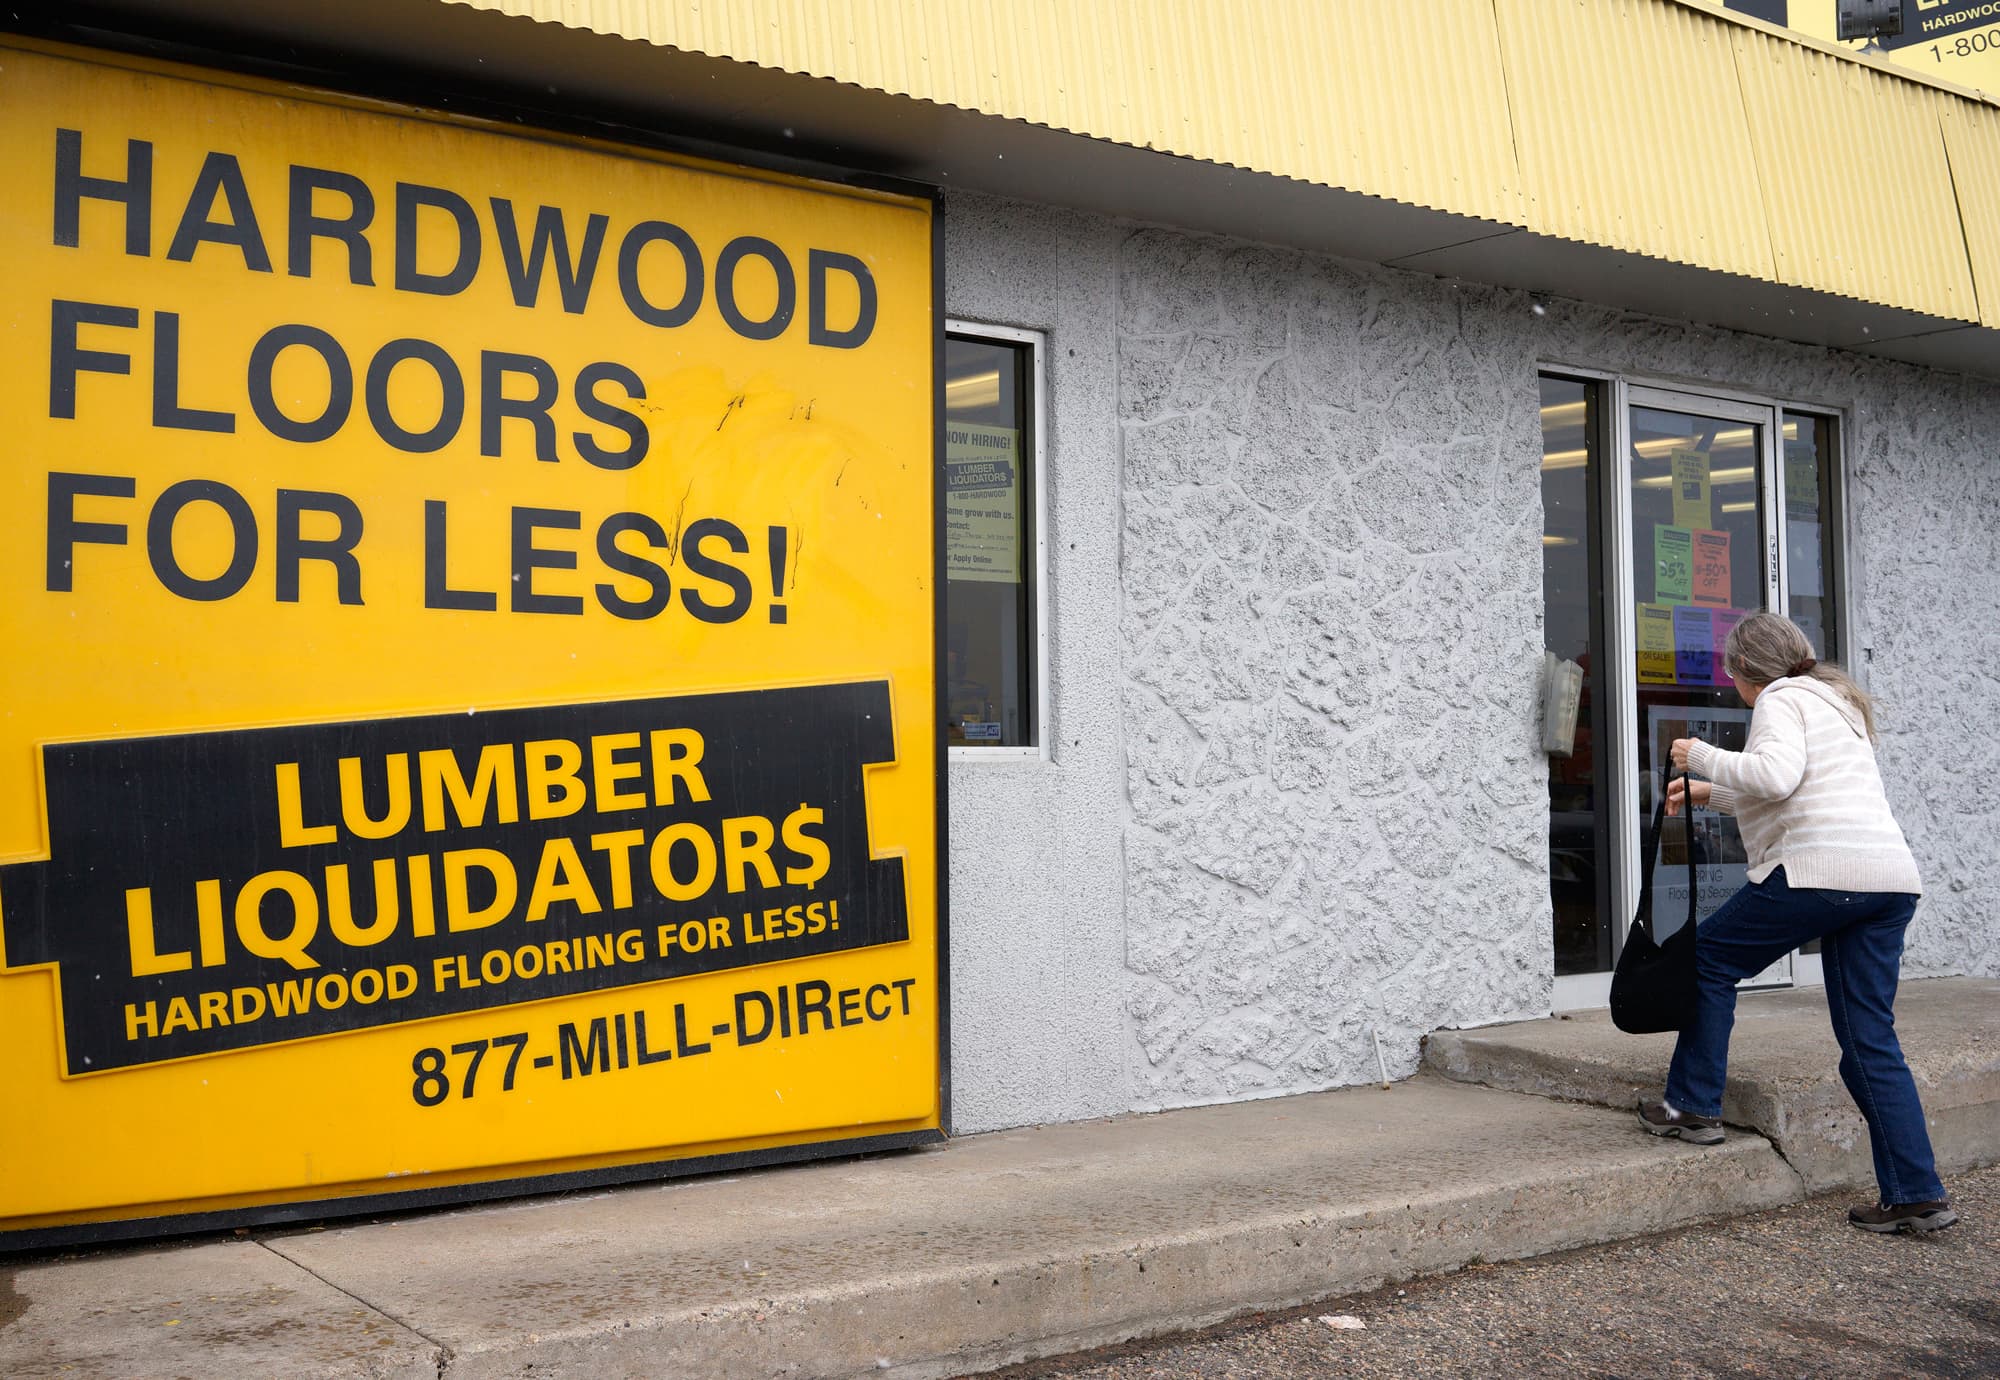 CPSC confirms Lumber Liquidators investigation